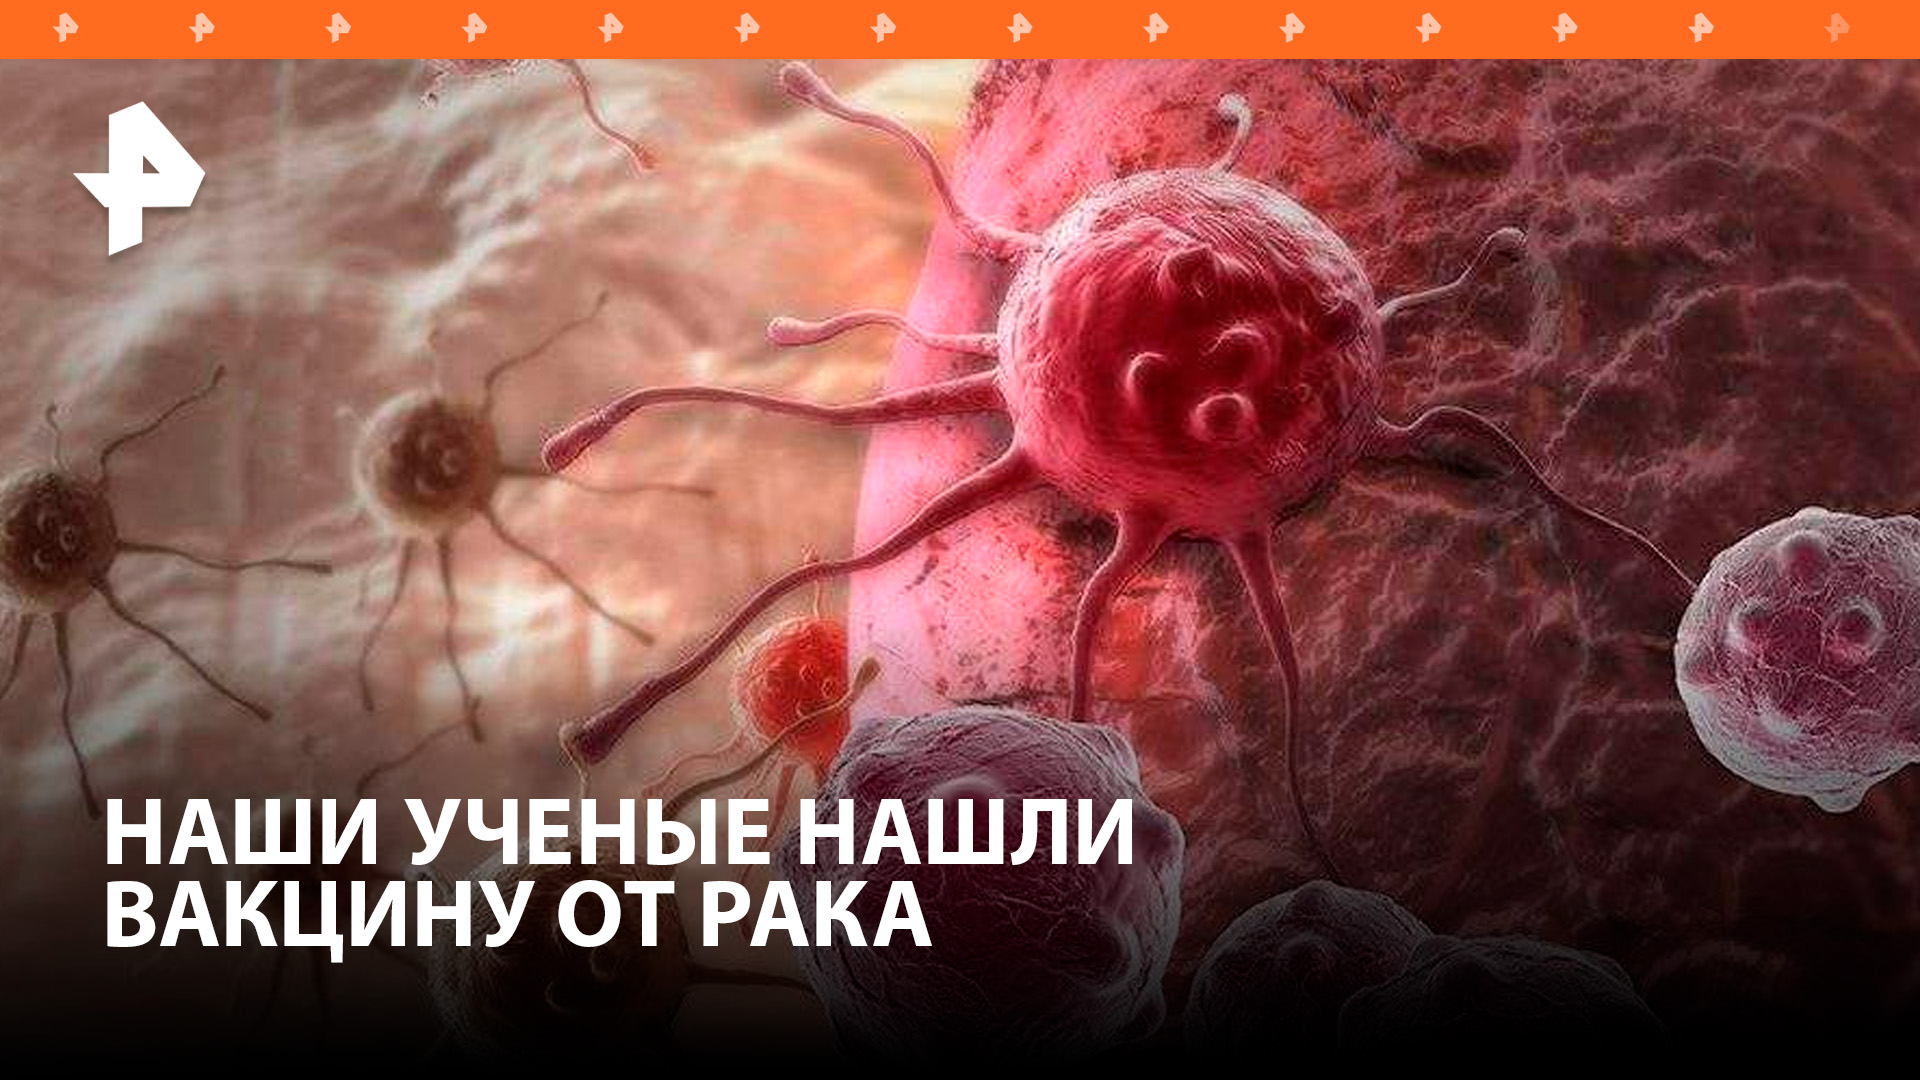 Вакцину против всех видов рака успешно испытали в России / РЕН Новости